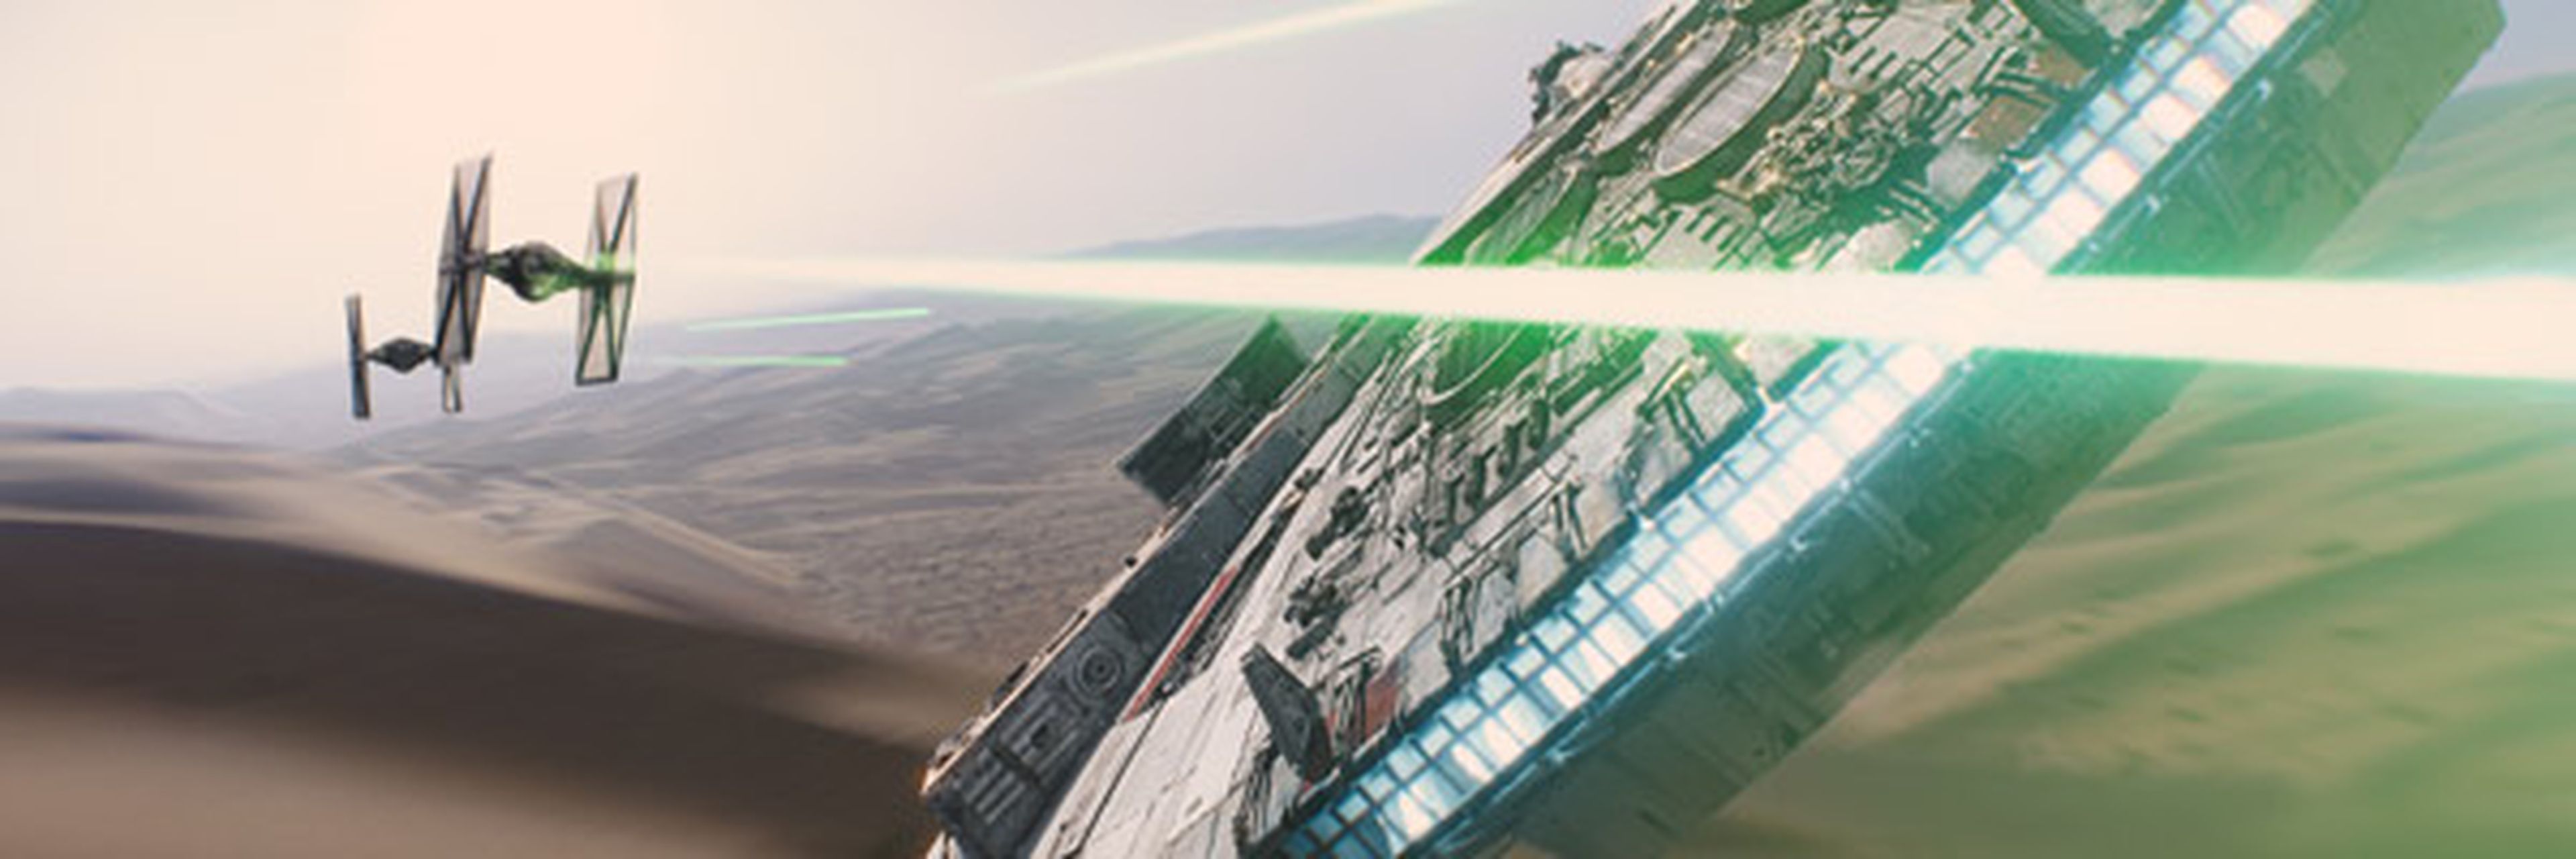 Star Wars Episodio VIII y Episodio IX ven confirmada su fecha de estreno